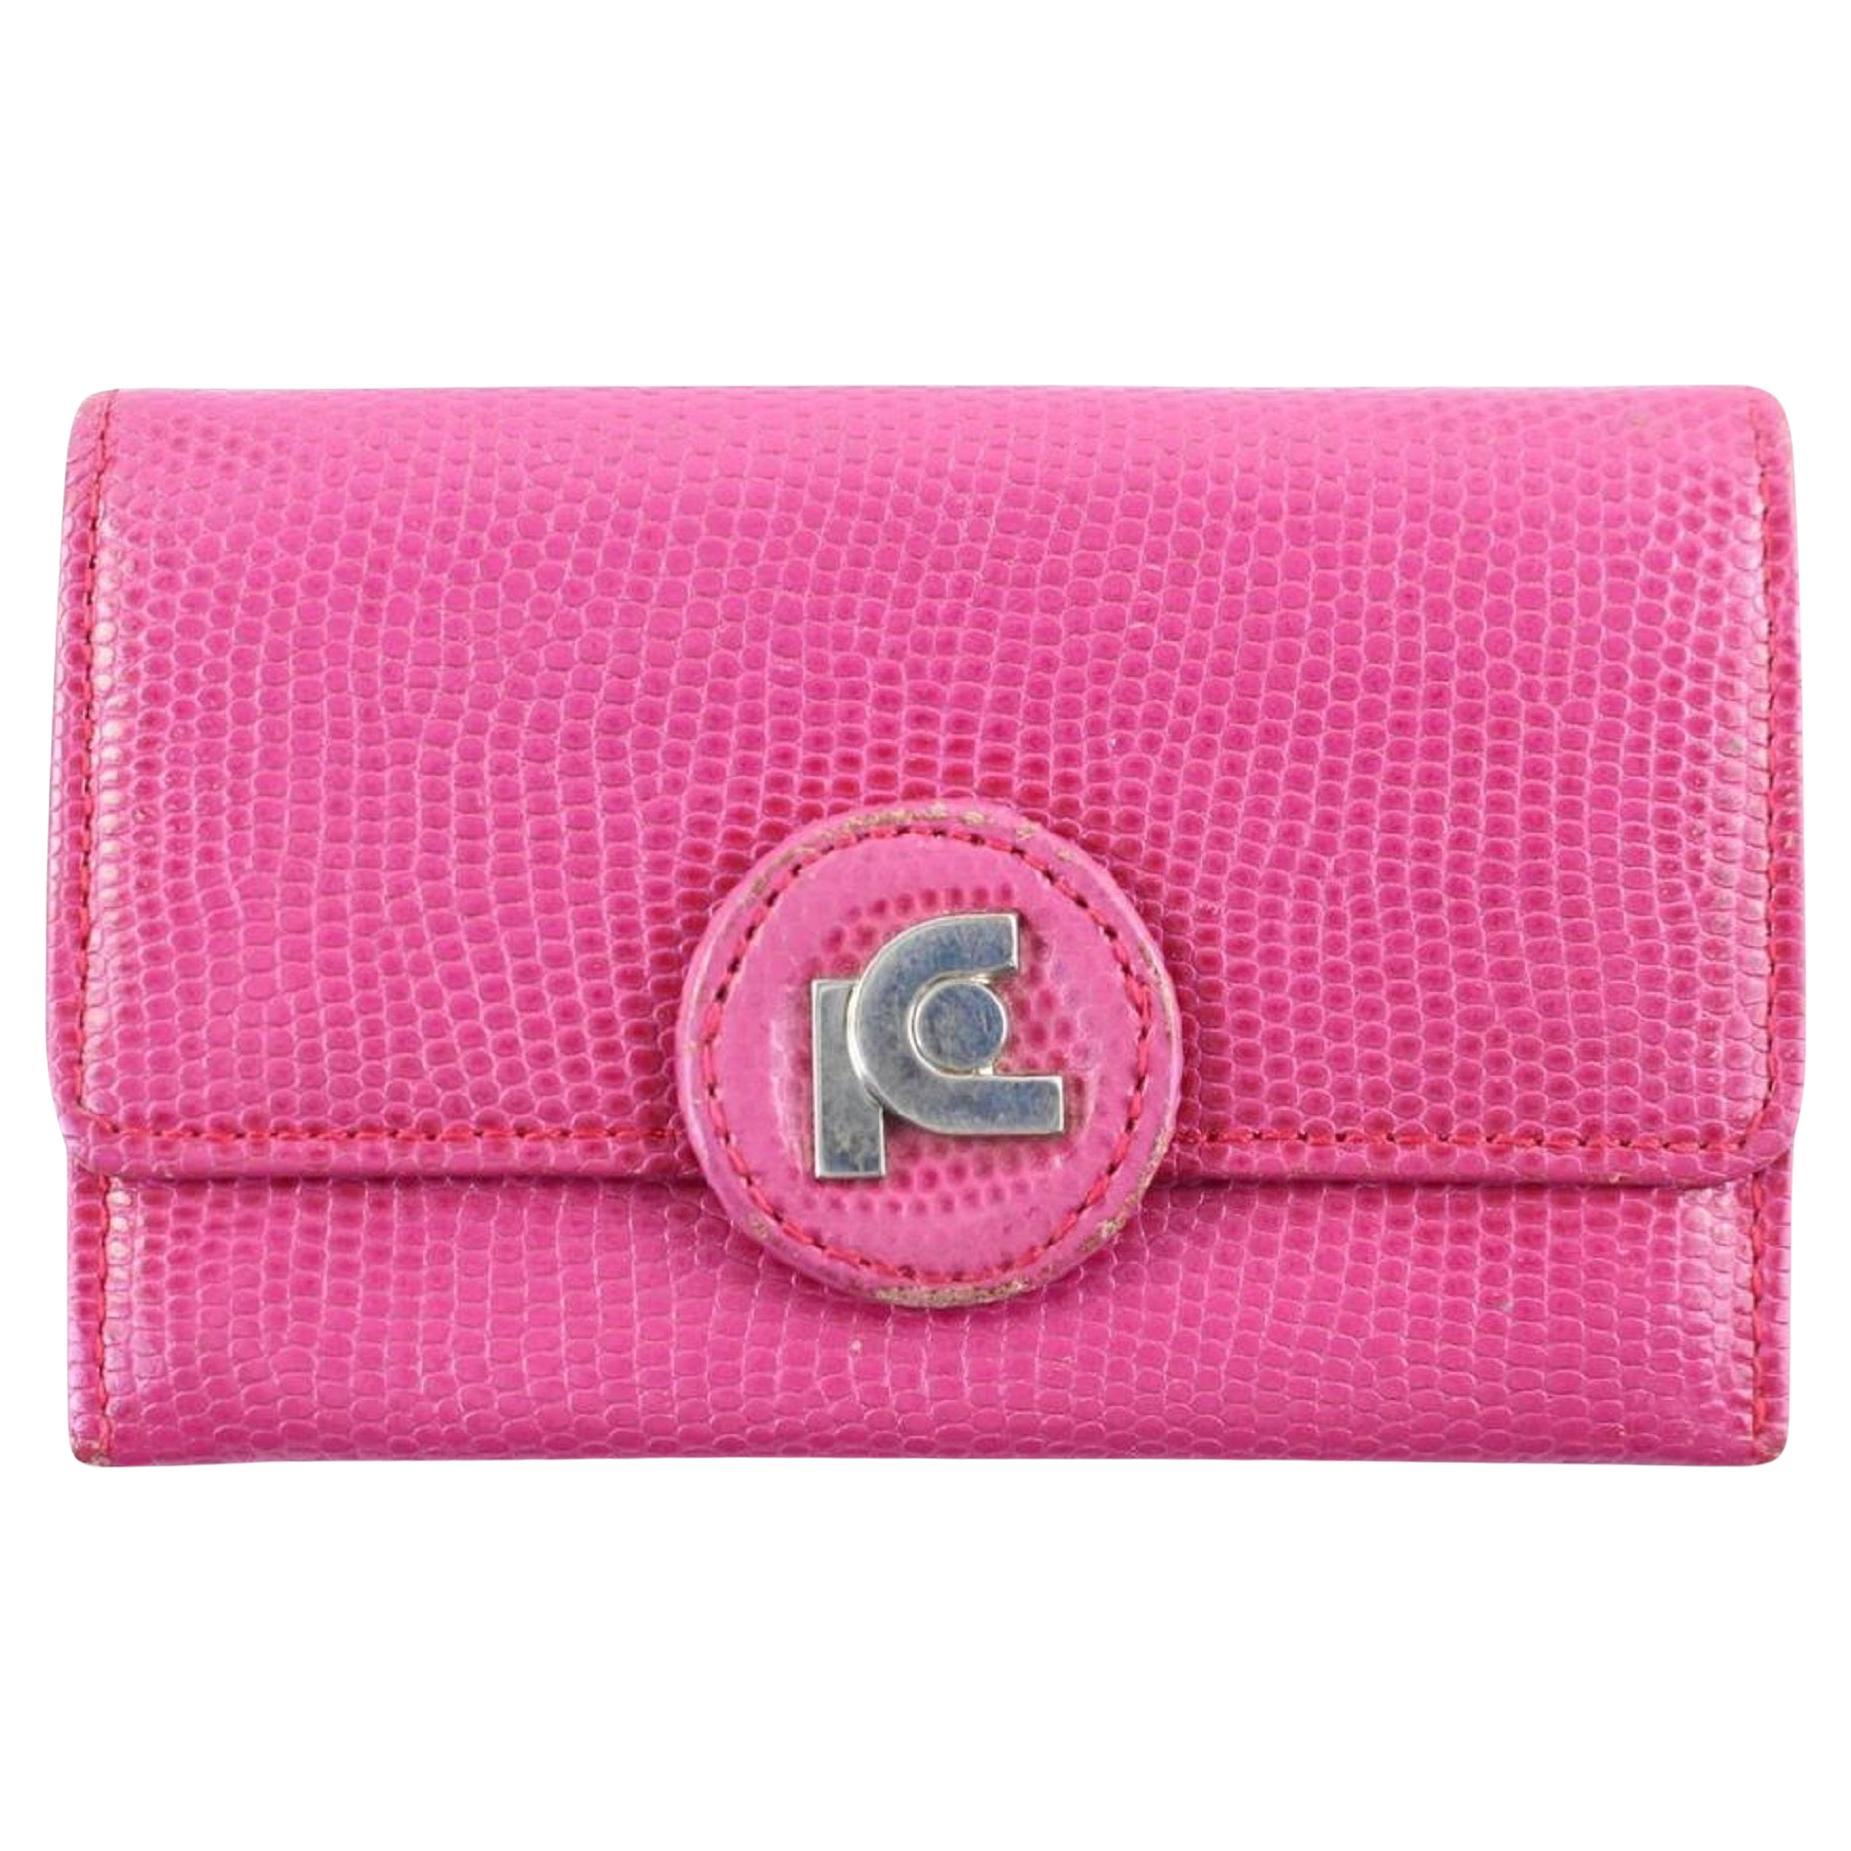 Pierre Cardin Card Wallet 7mr0115 Pink Clutch For Sale